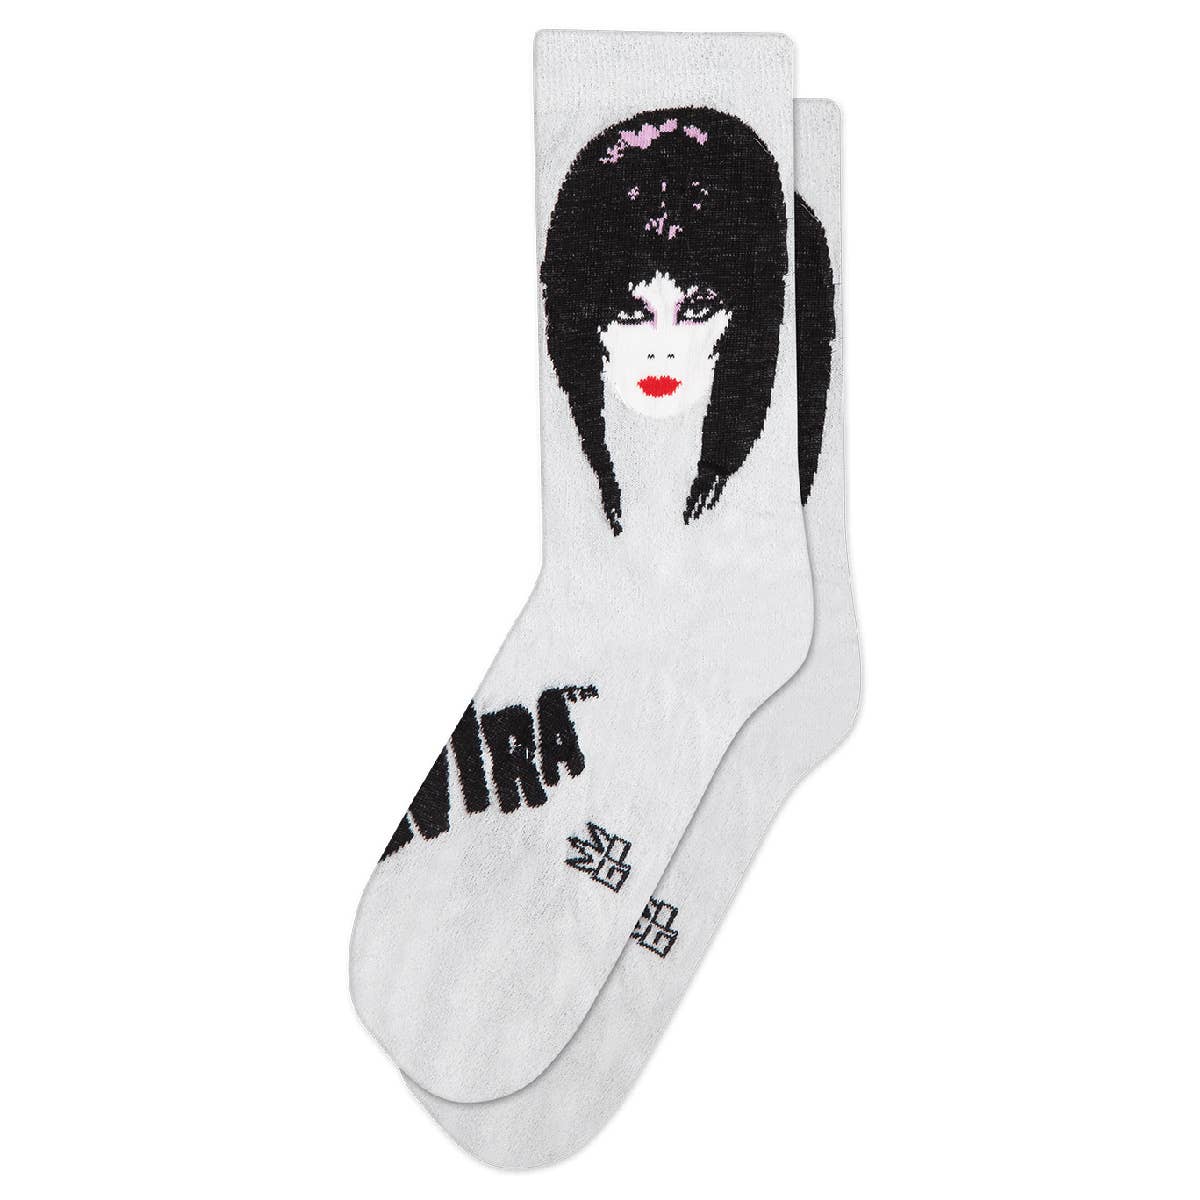 Elvira Sparkle Sheer Socks - Hidden Gems Novelty